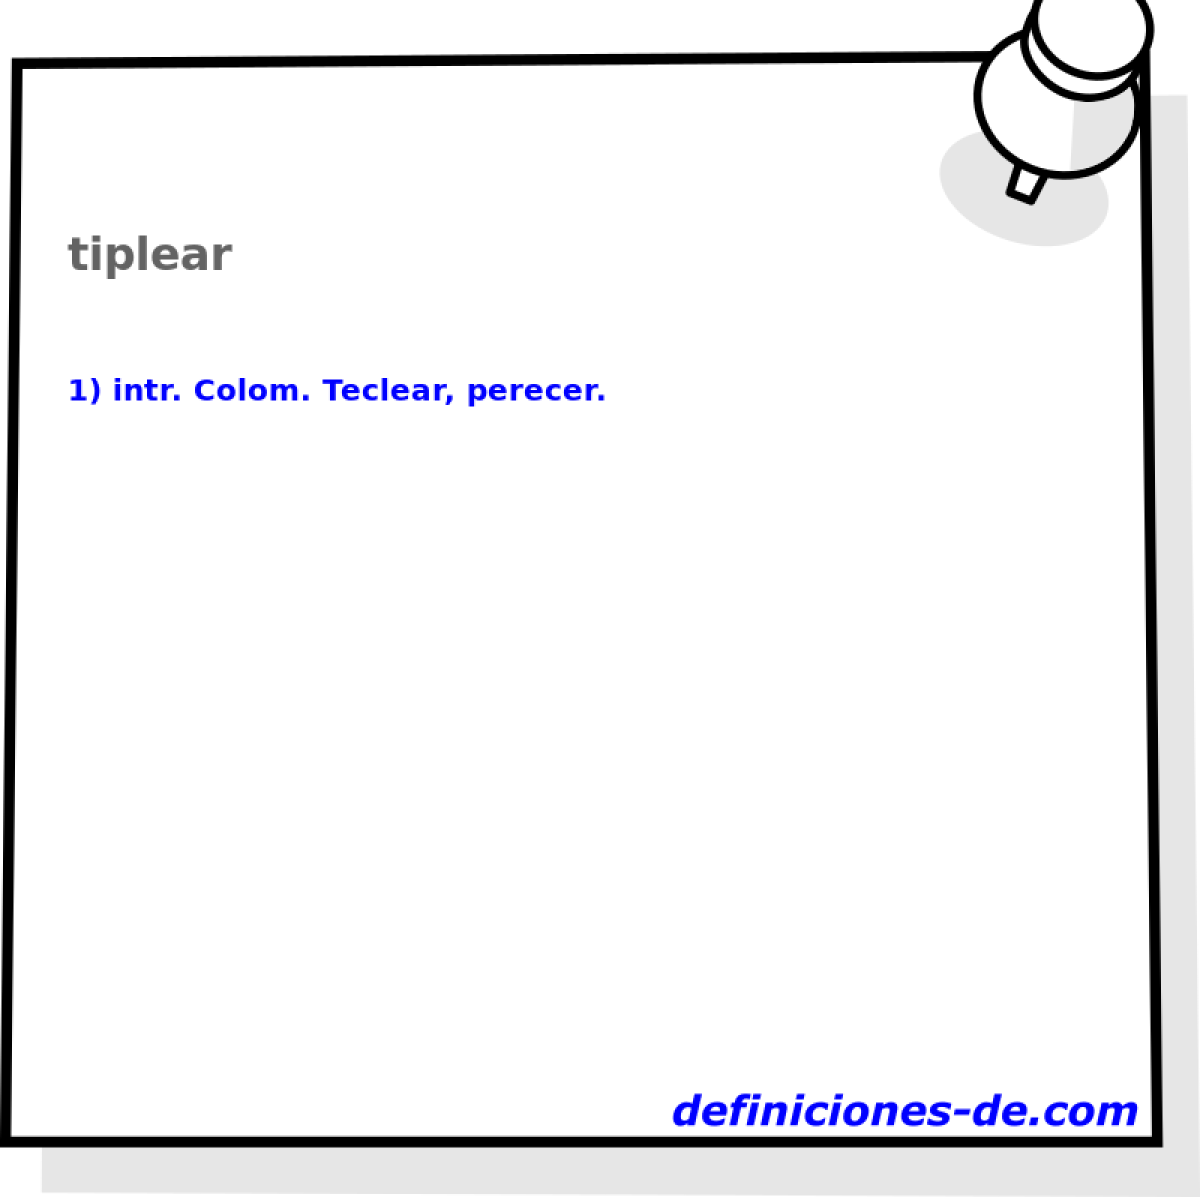 tiplear 